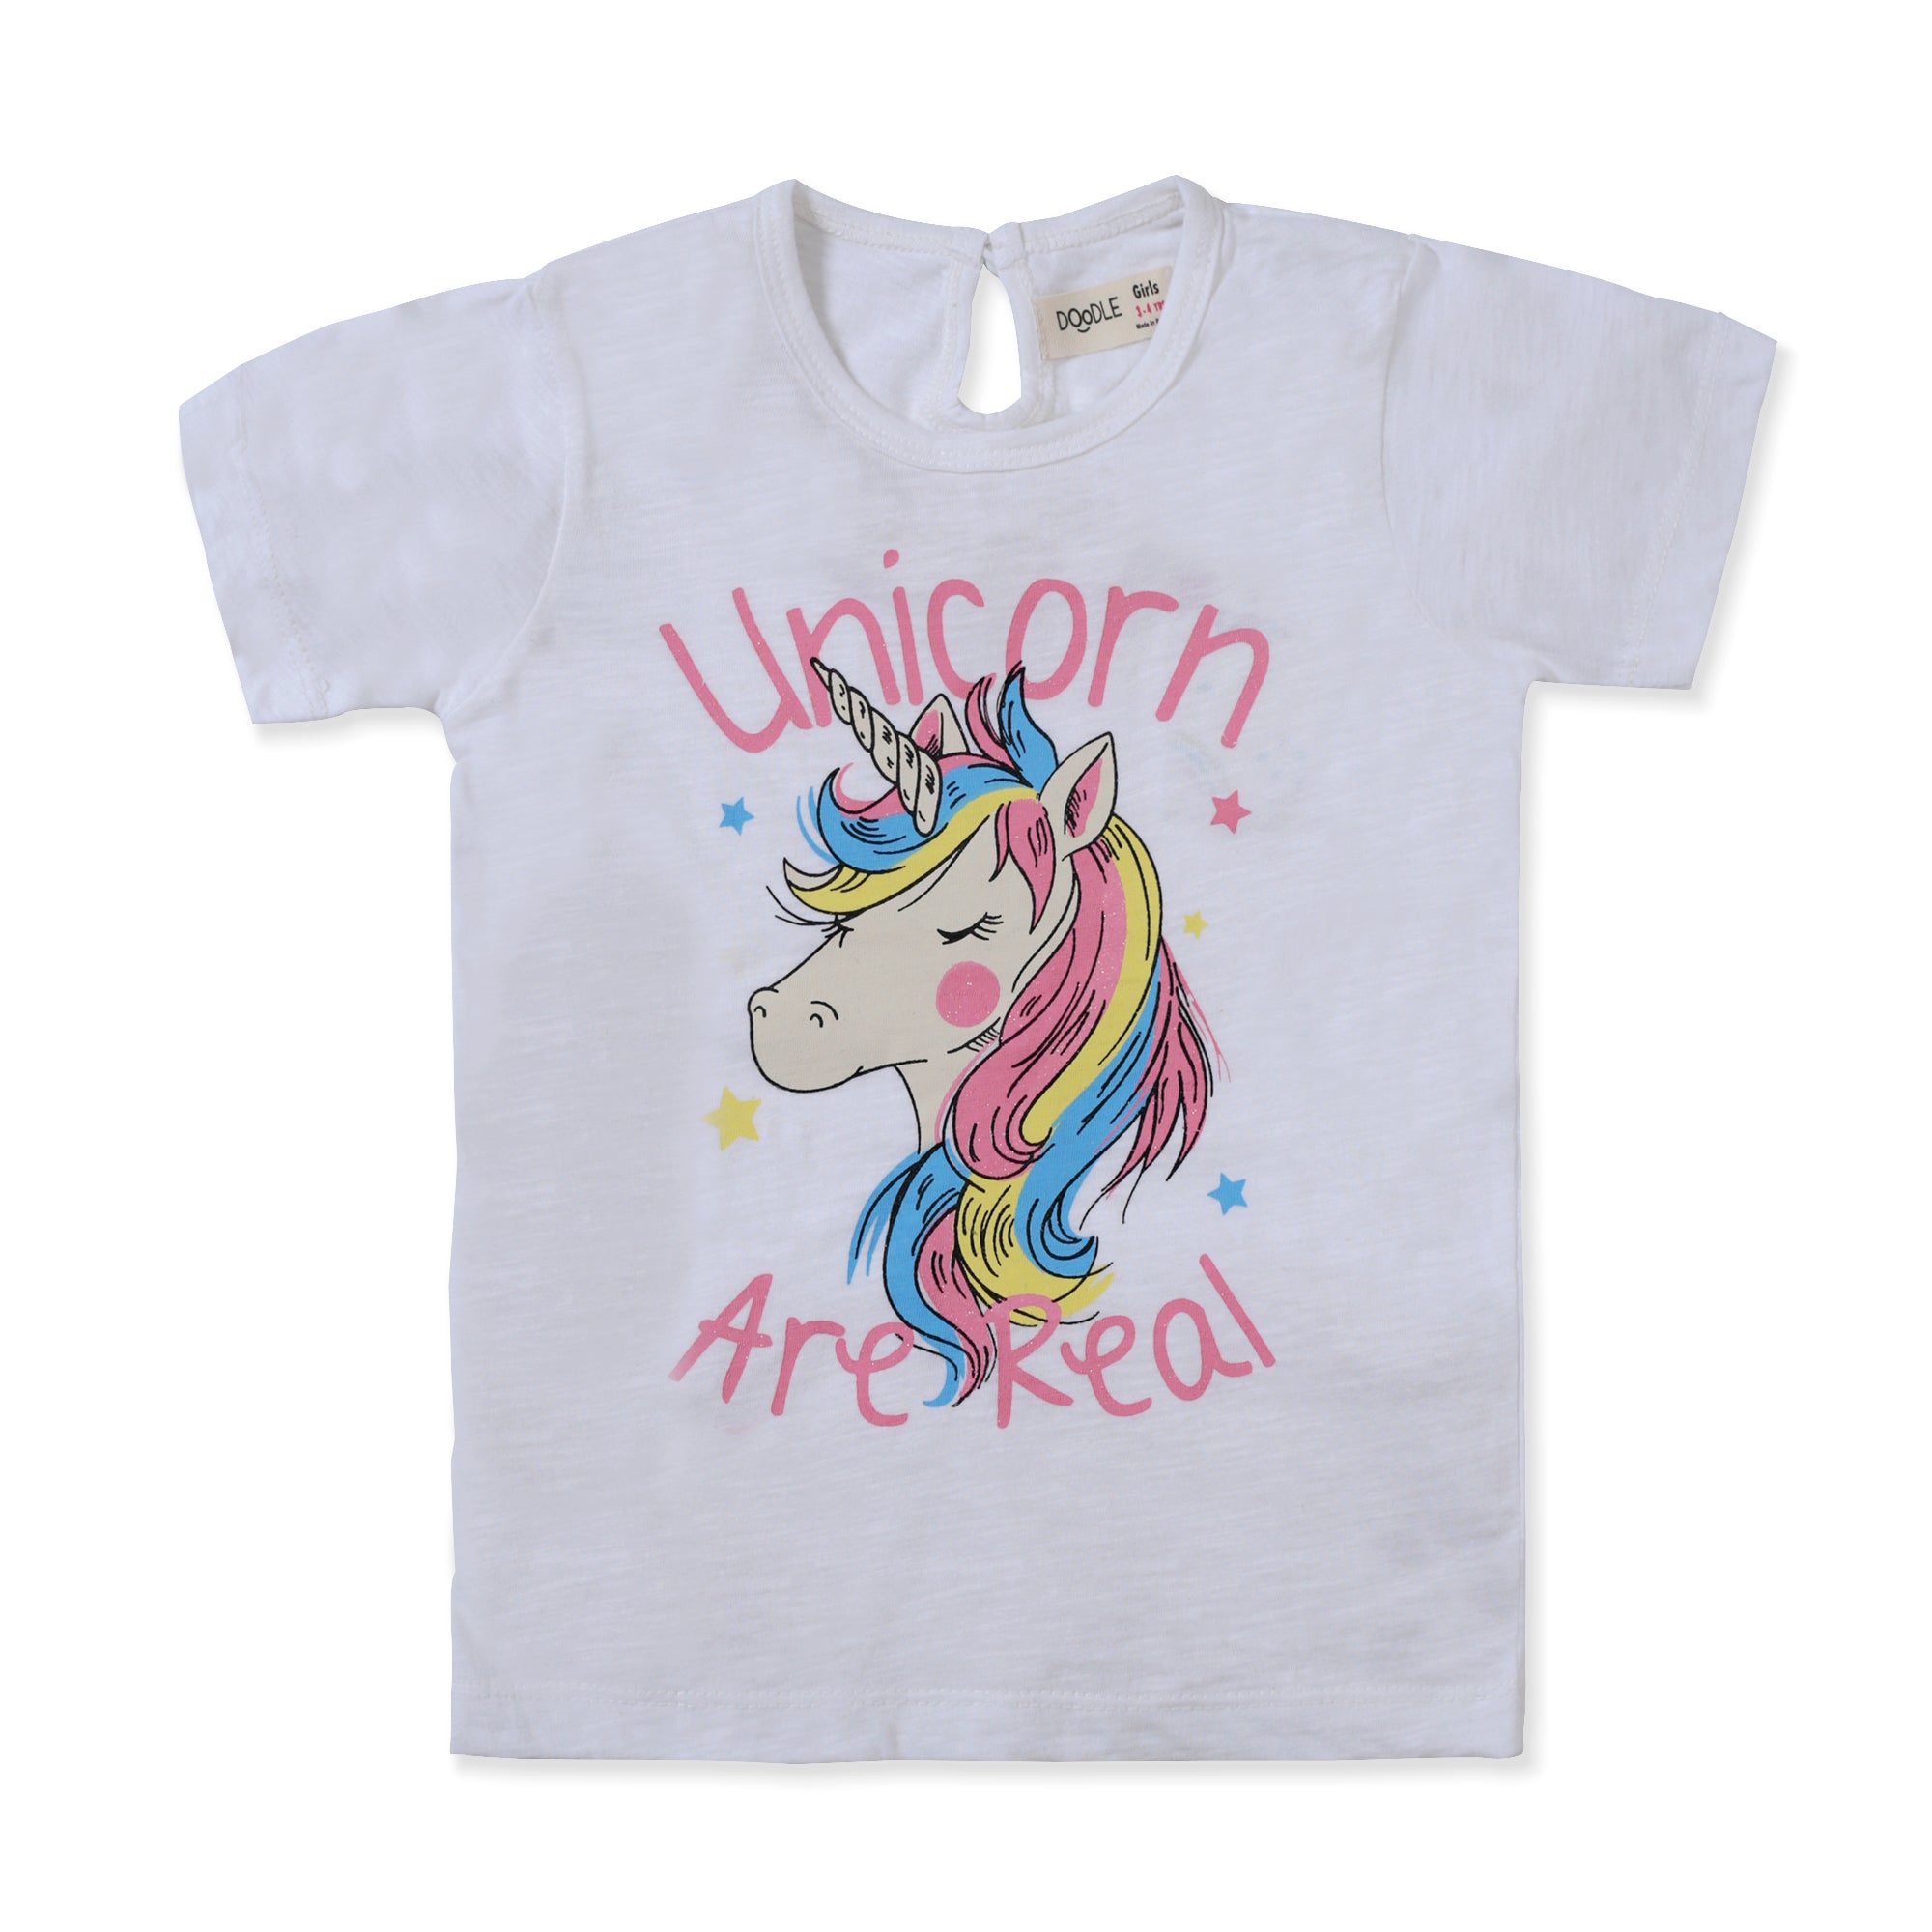 White Unicorn Graphic T-Shirt